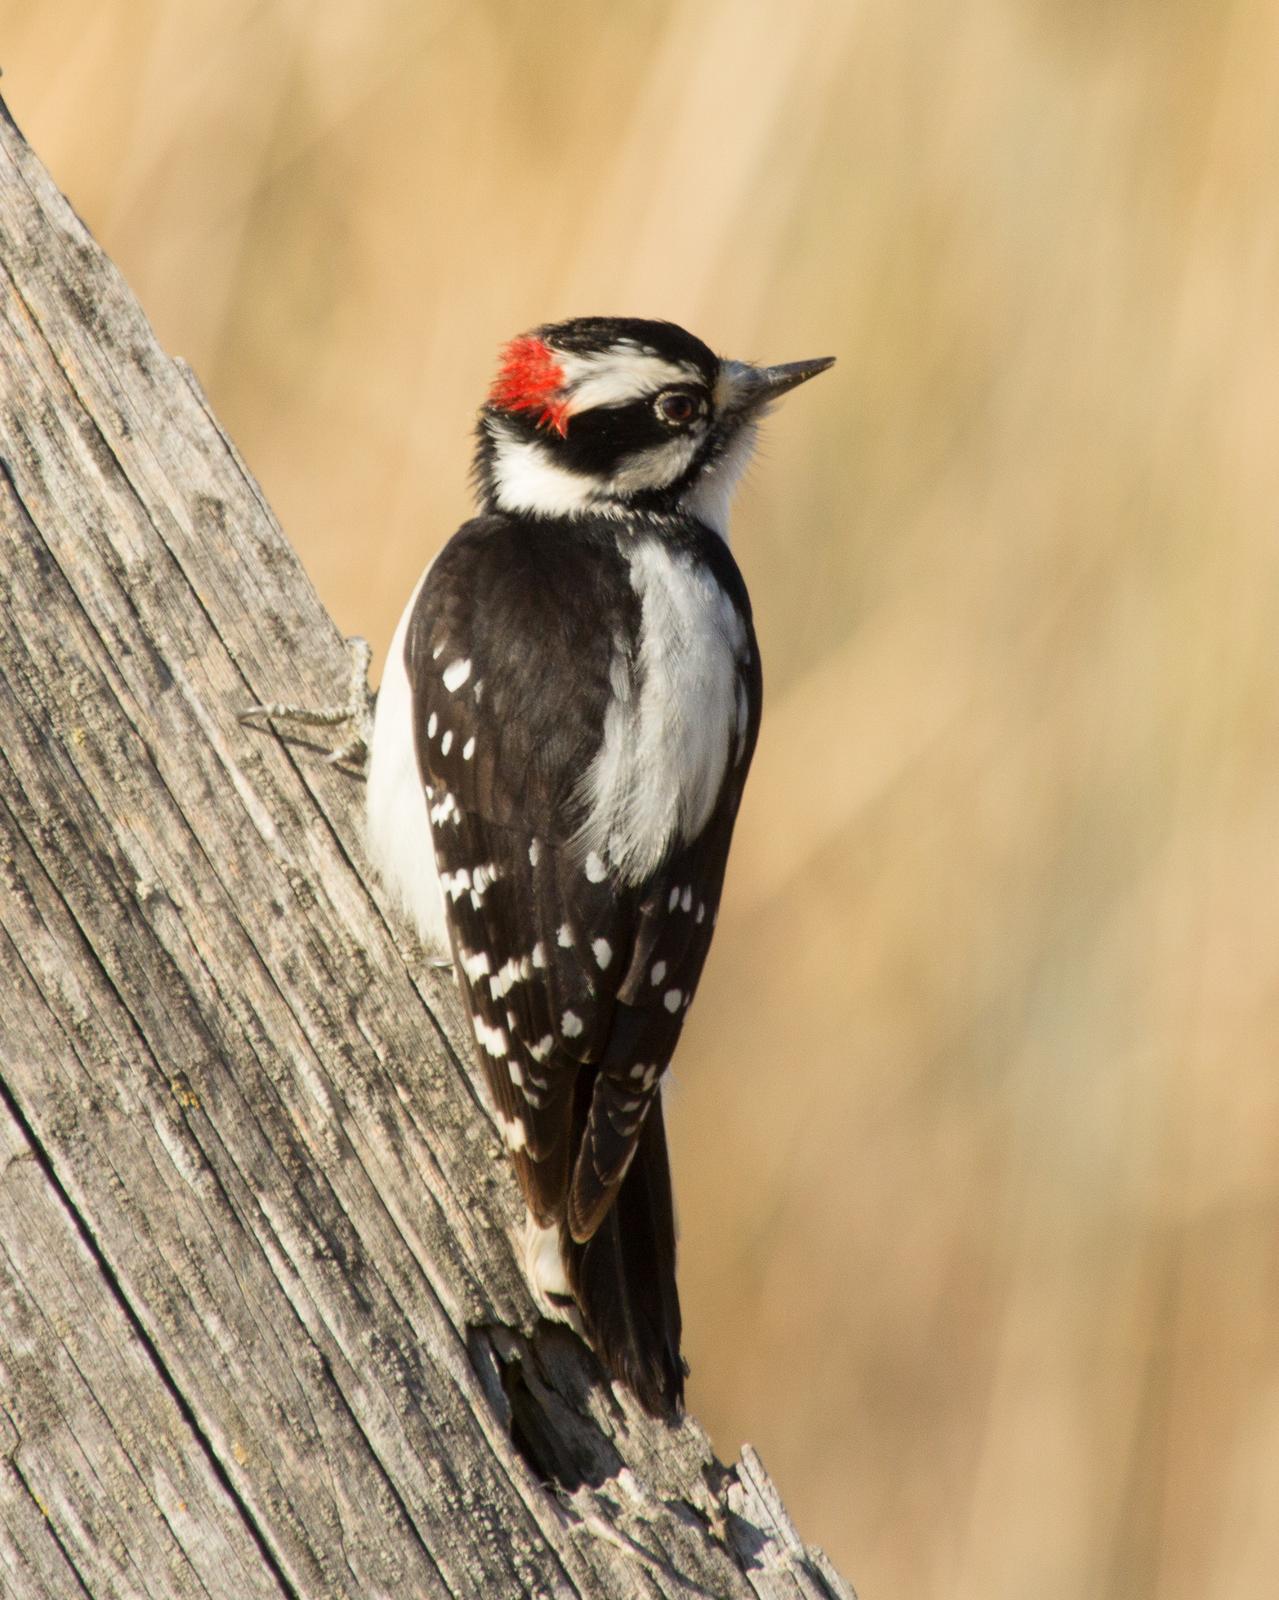 Downy Woodpecker Photo by Anita Strawn de Ojeda